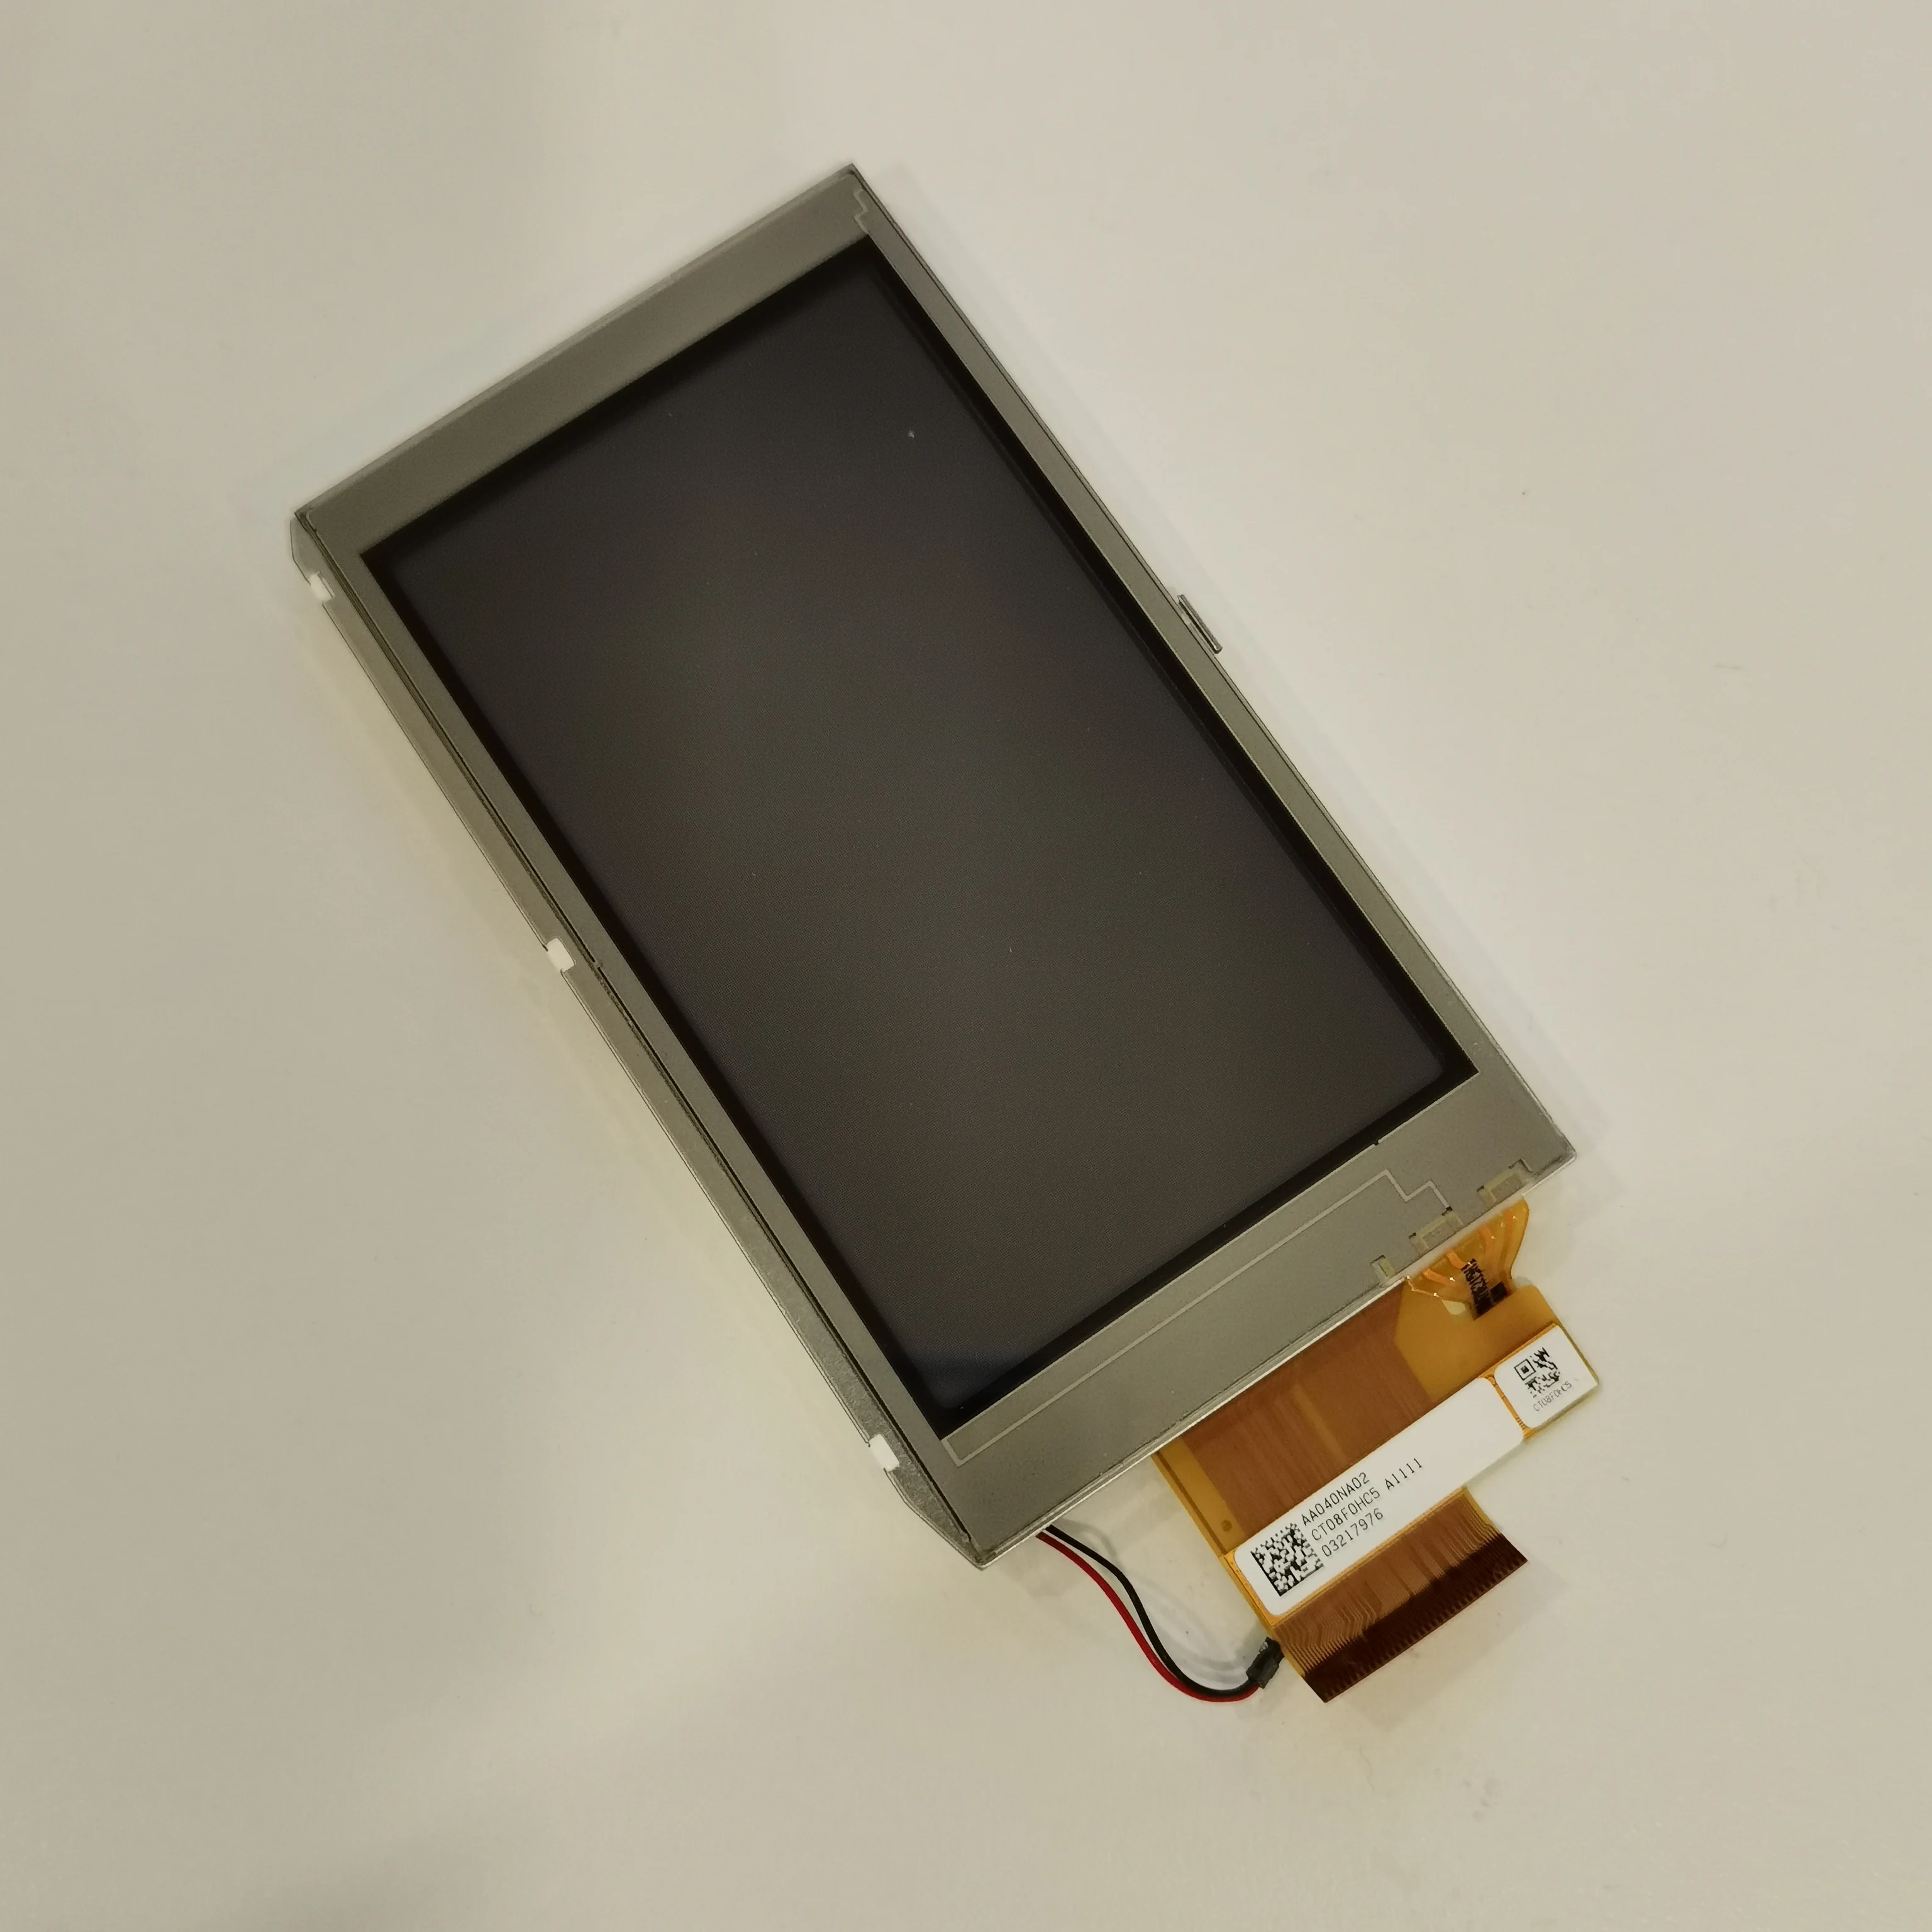 Pantalla LCD de mano para GARMIN MONTANA 600t 610 610t 680 680t, pantalla LCD de reparación con reemplazo de digitalizador táctil